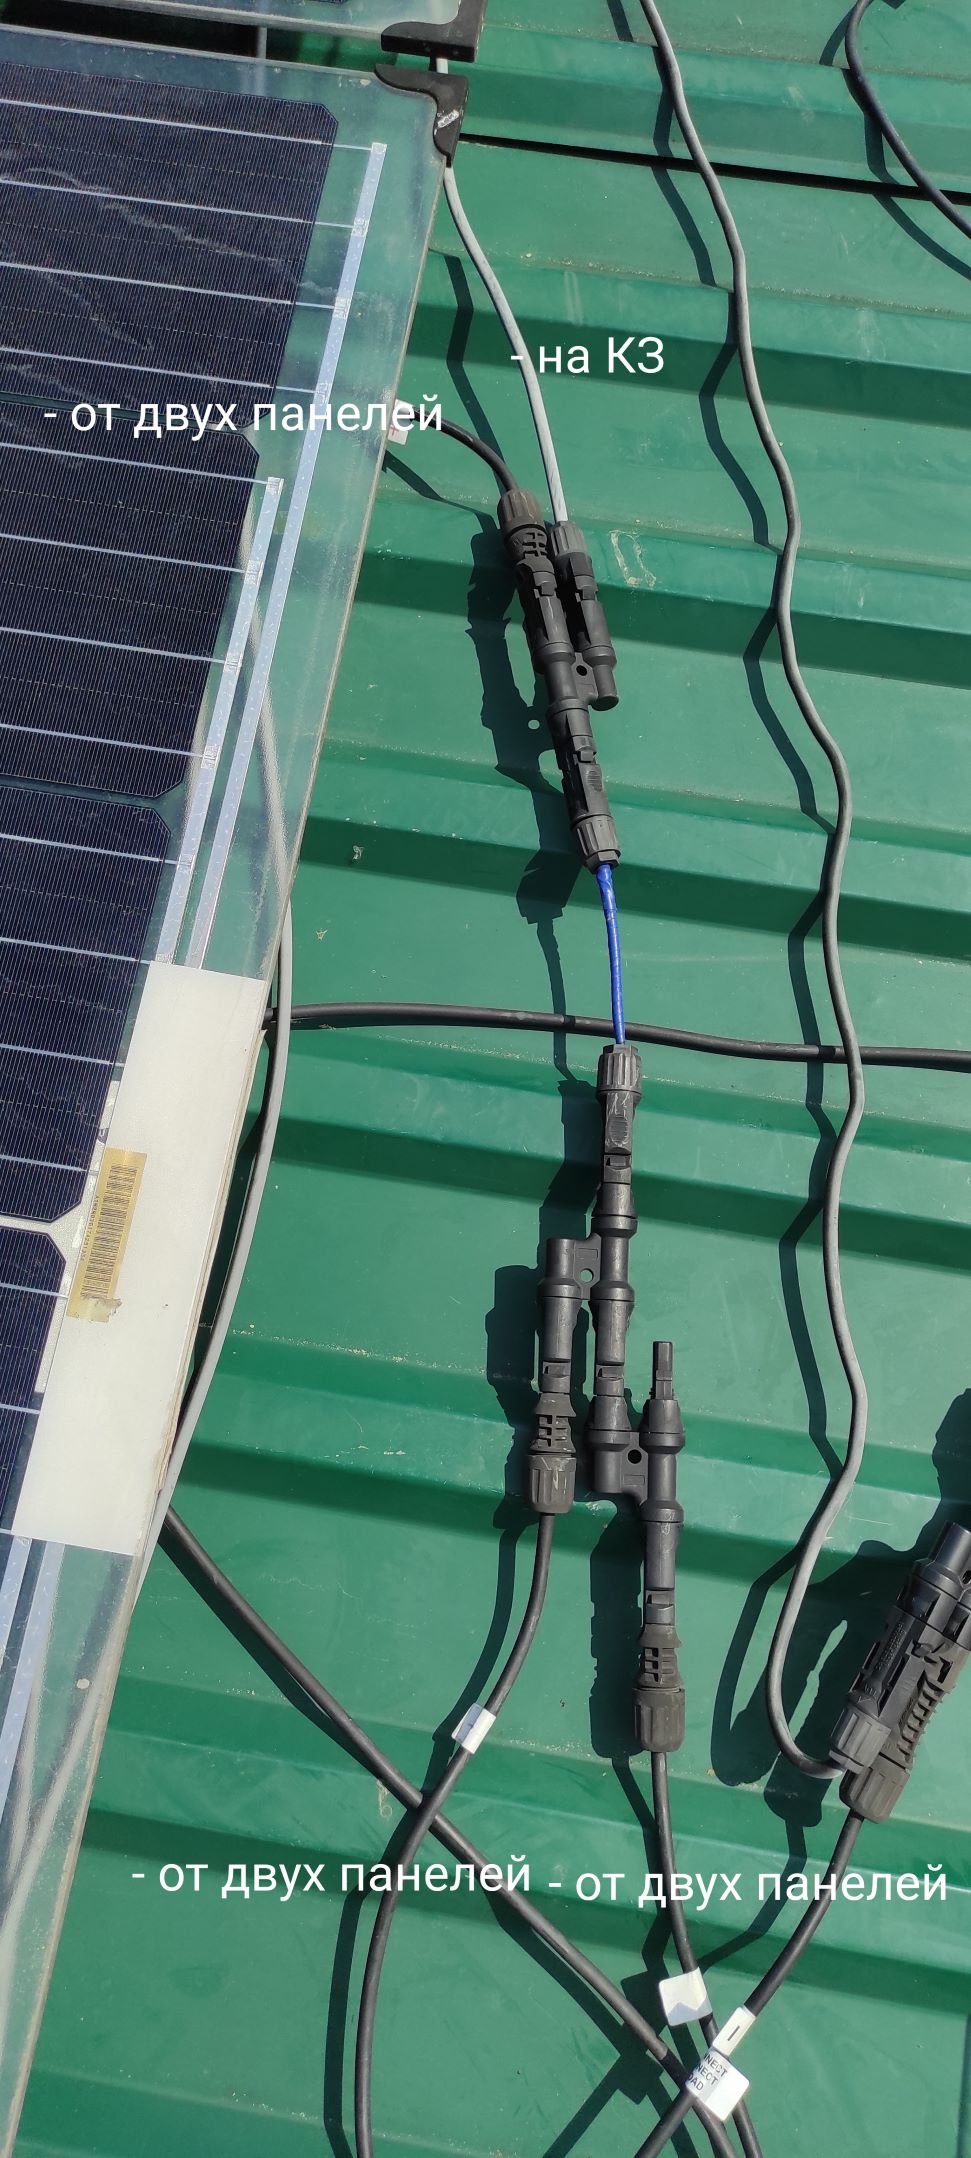 Демотиваторы в солнечных электростанциях